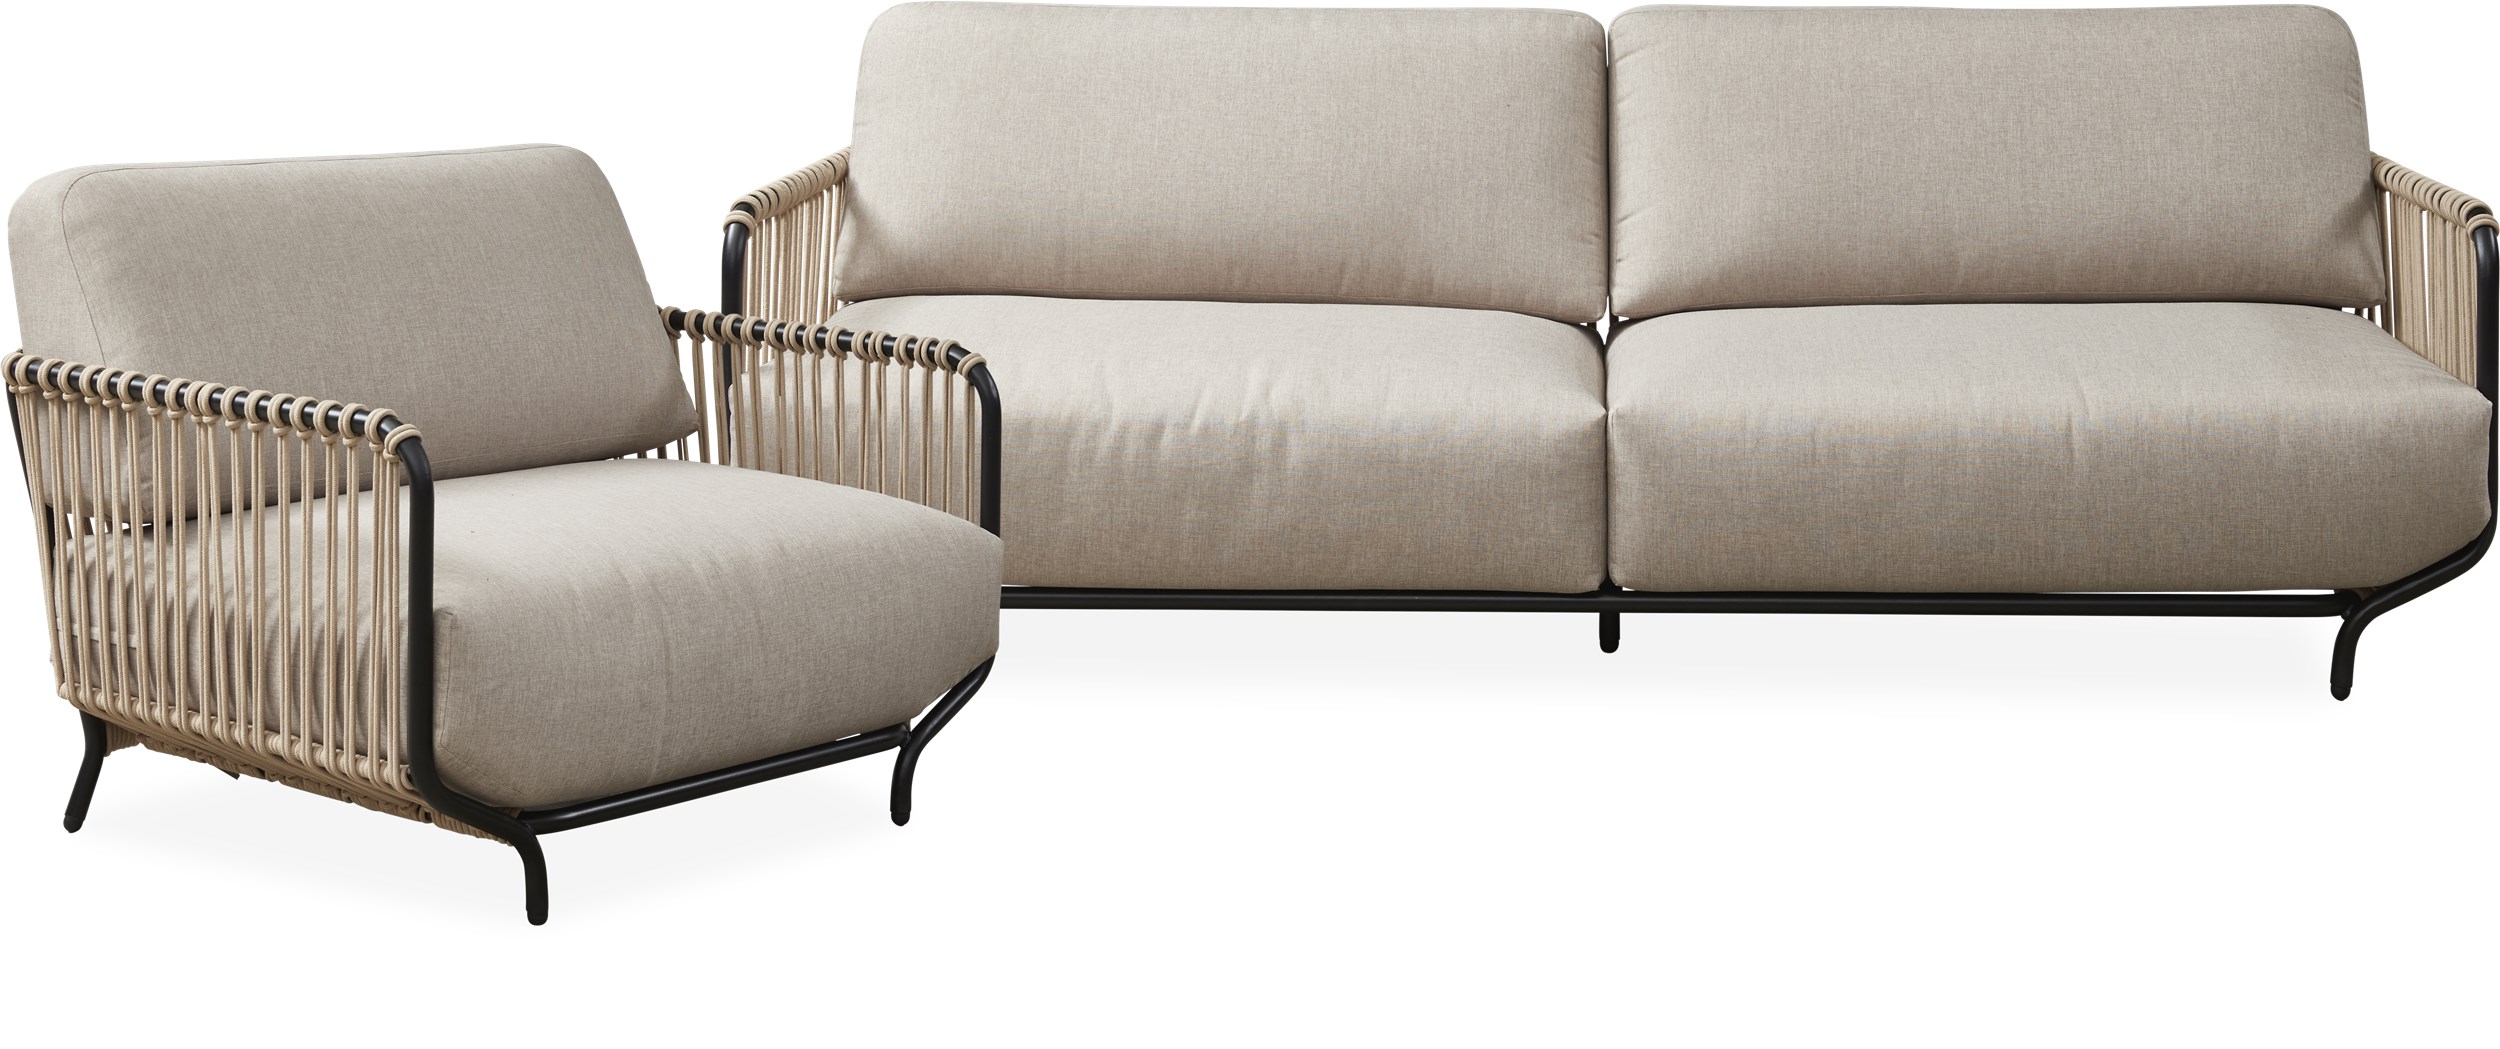 Vesina Loungeset med 1 soffa + 1 stol sandfärgat